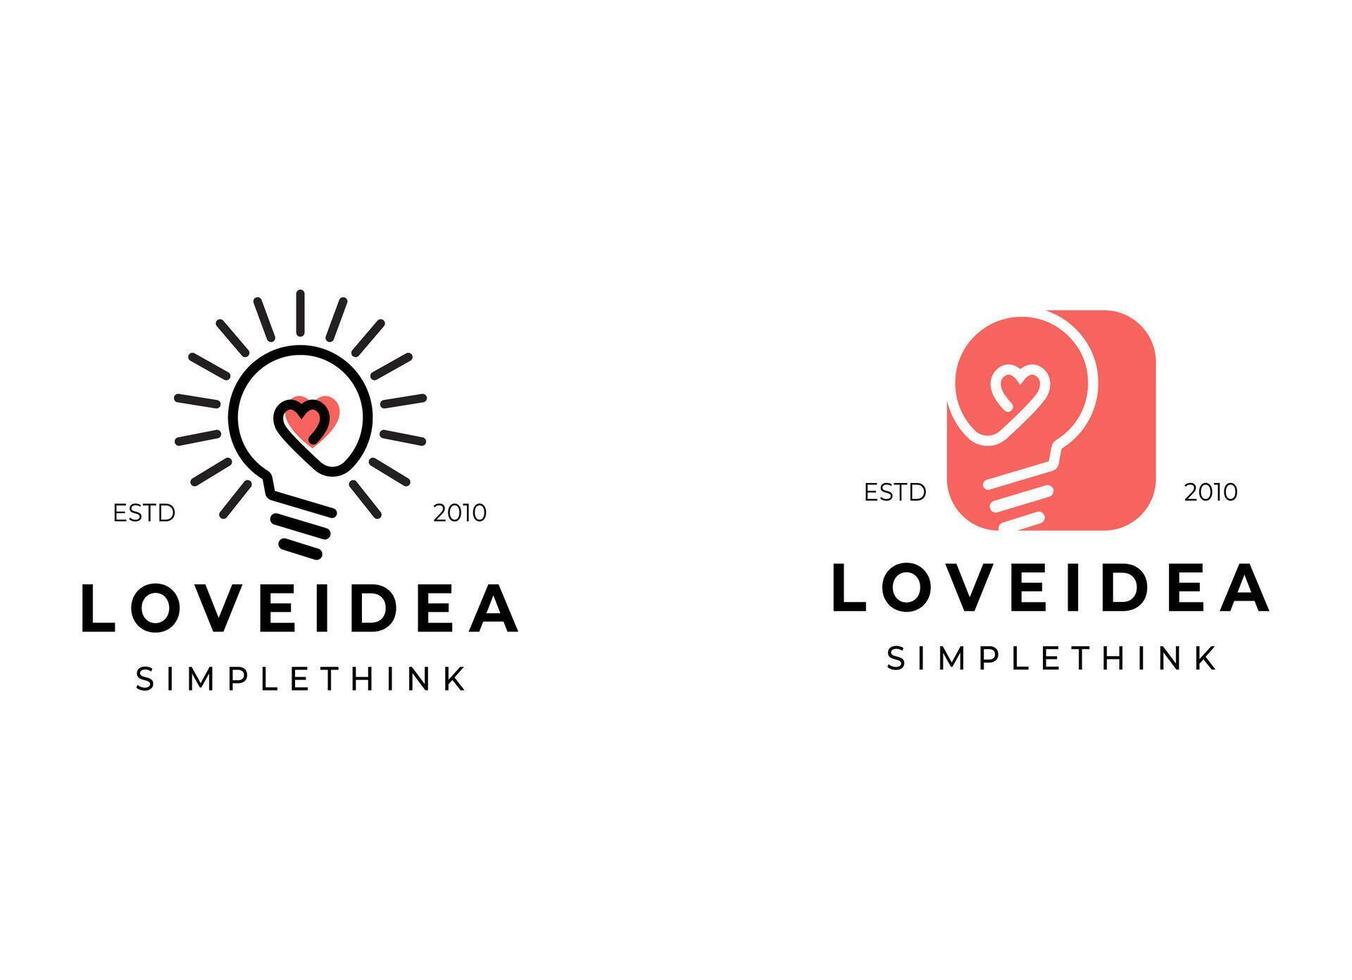 Logo Vorlage frisch Idee, Denken, Lampe, die Glühbirne. Marke, Marke, Unternehmen, Unternehmen, Identität, Logotyp. sauber und modern Stil Design vektor